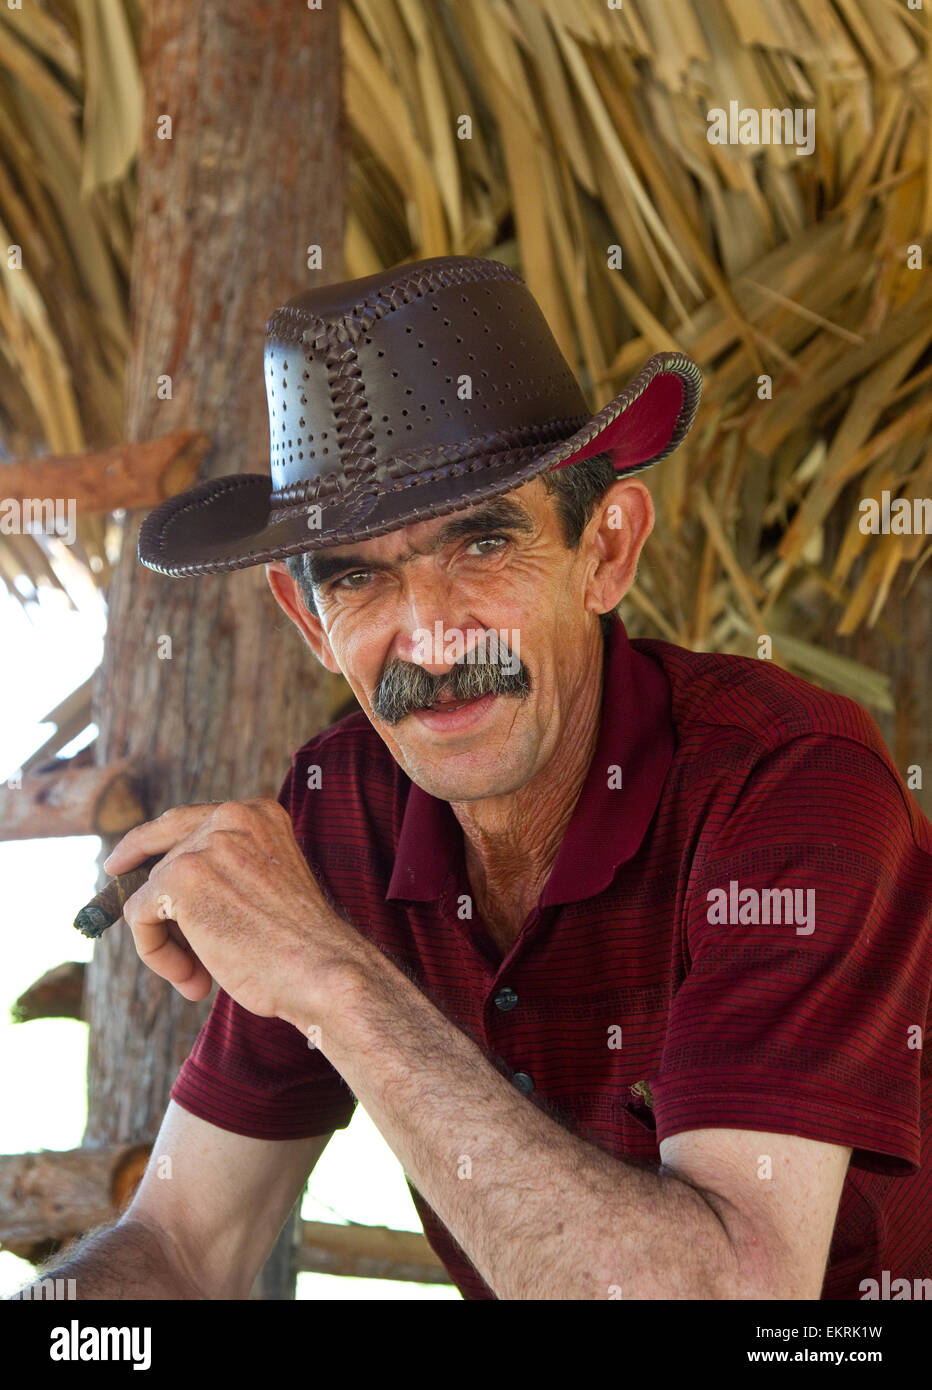 Un cultivateur de tabac dans sa grange dans la région de Vinales, Cuba Banque D'Images